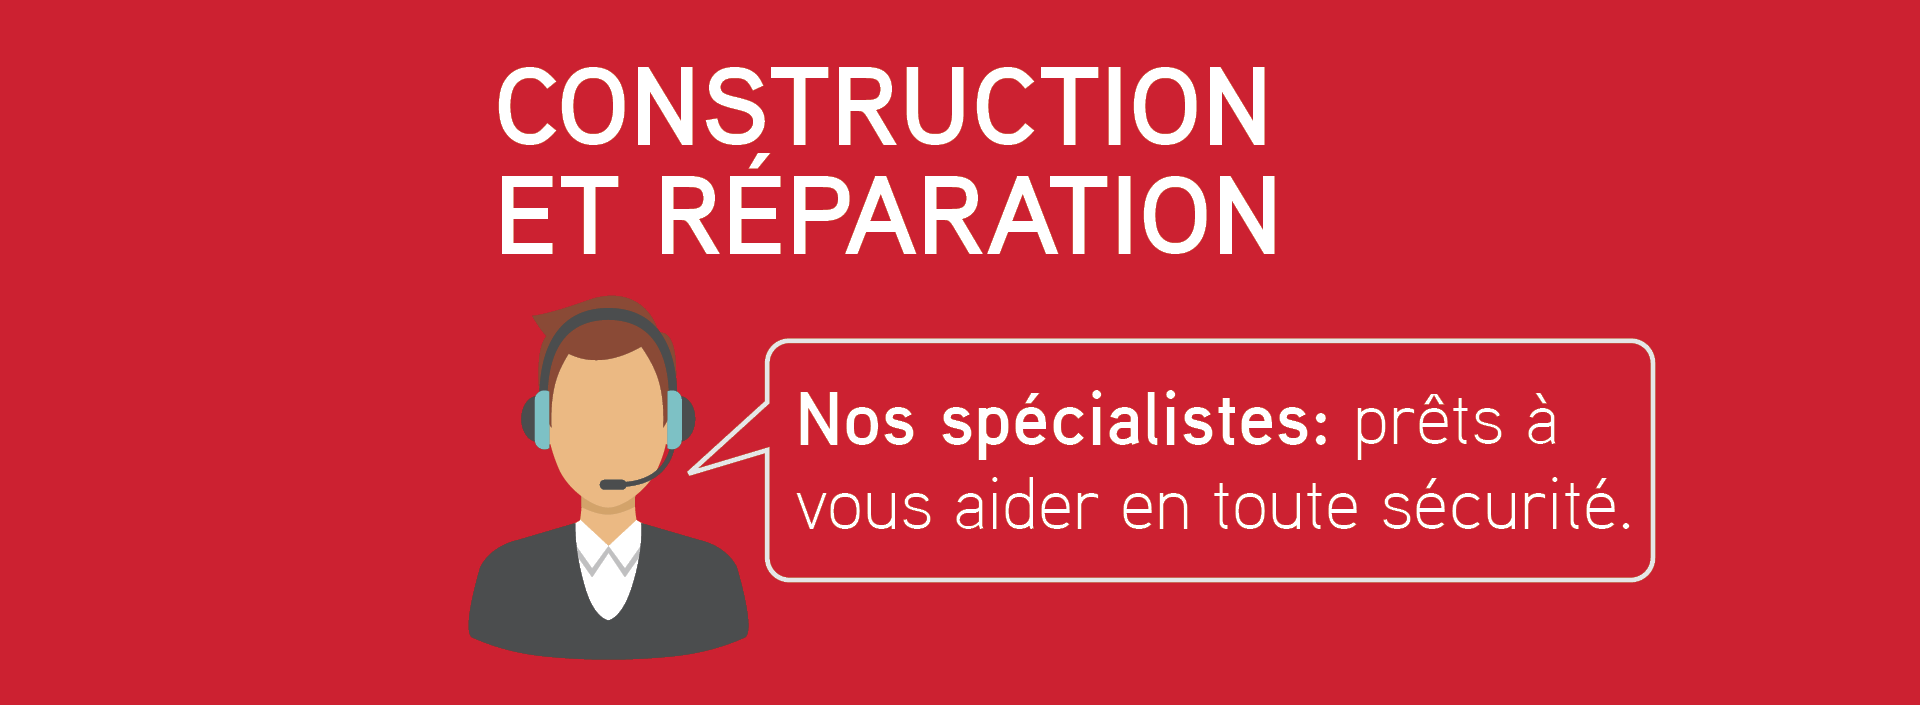 Construction et réparation. Nos spécialistes: prêts à vous aider en toute sécurité.